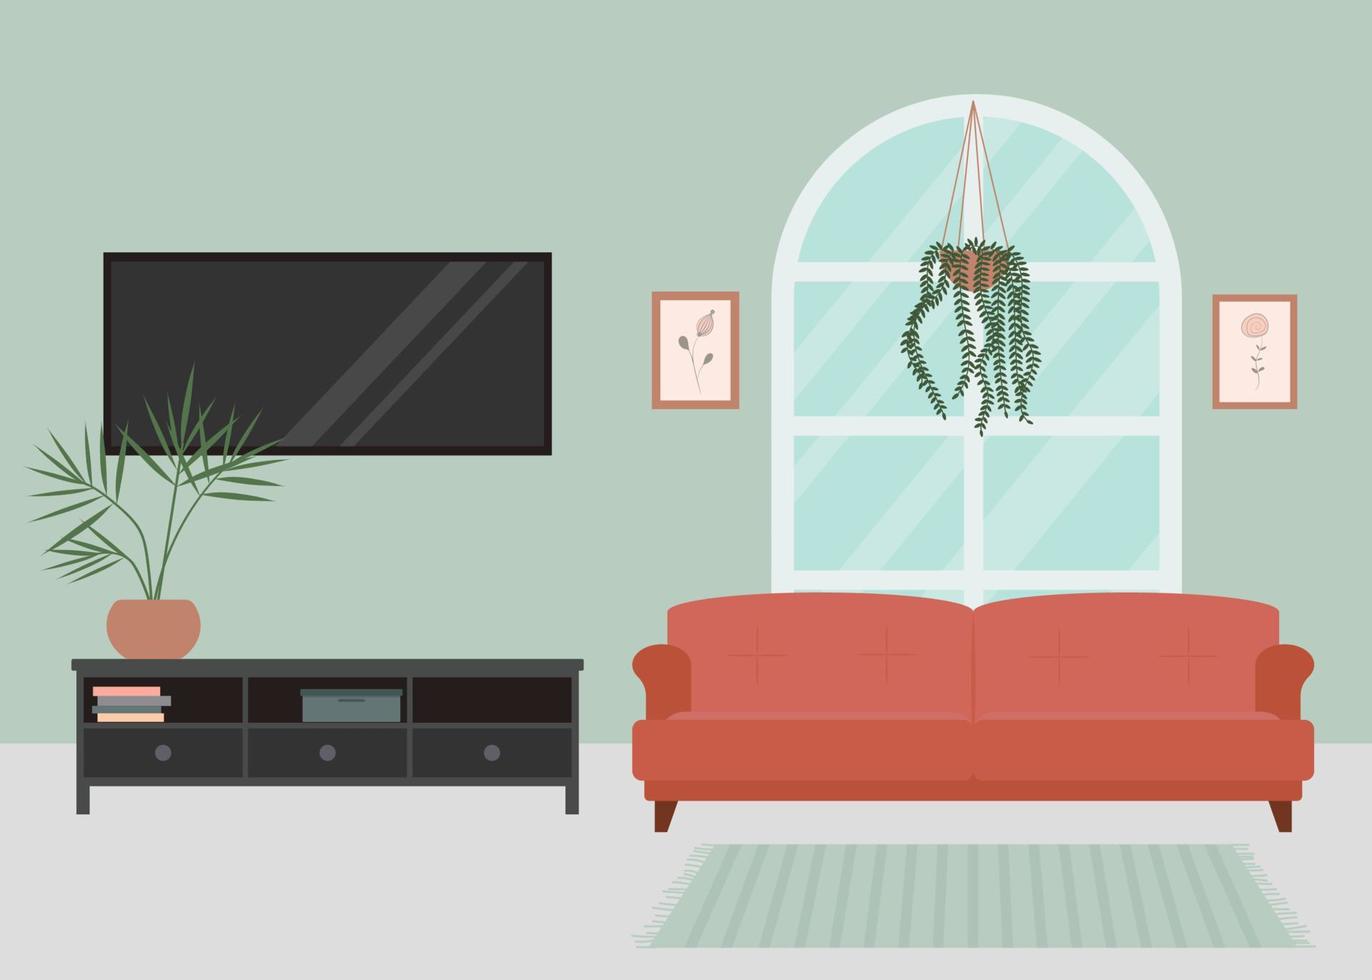 acogedor salón interior, con una gran ventana, sofá, tv y pintura de carteles. vector